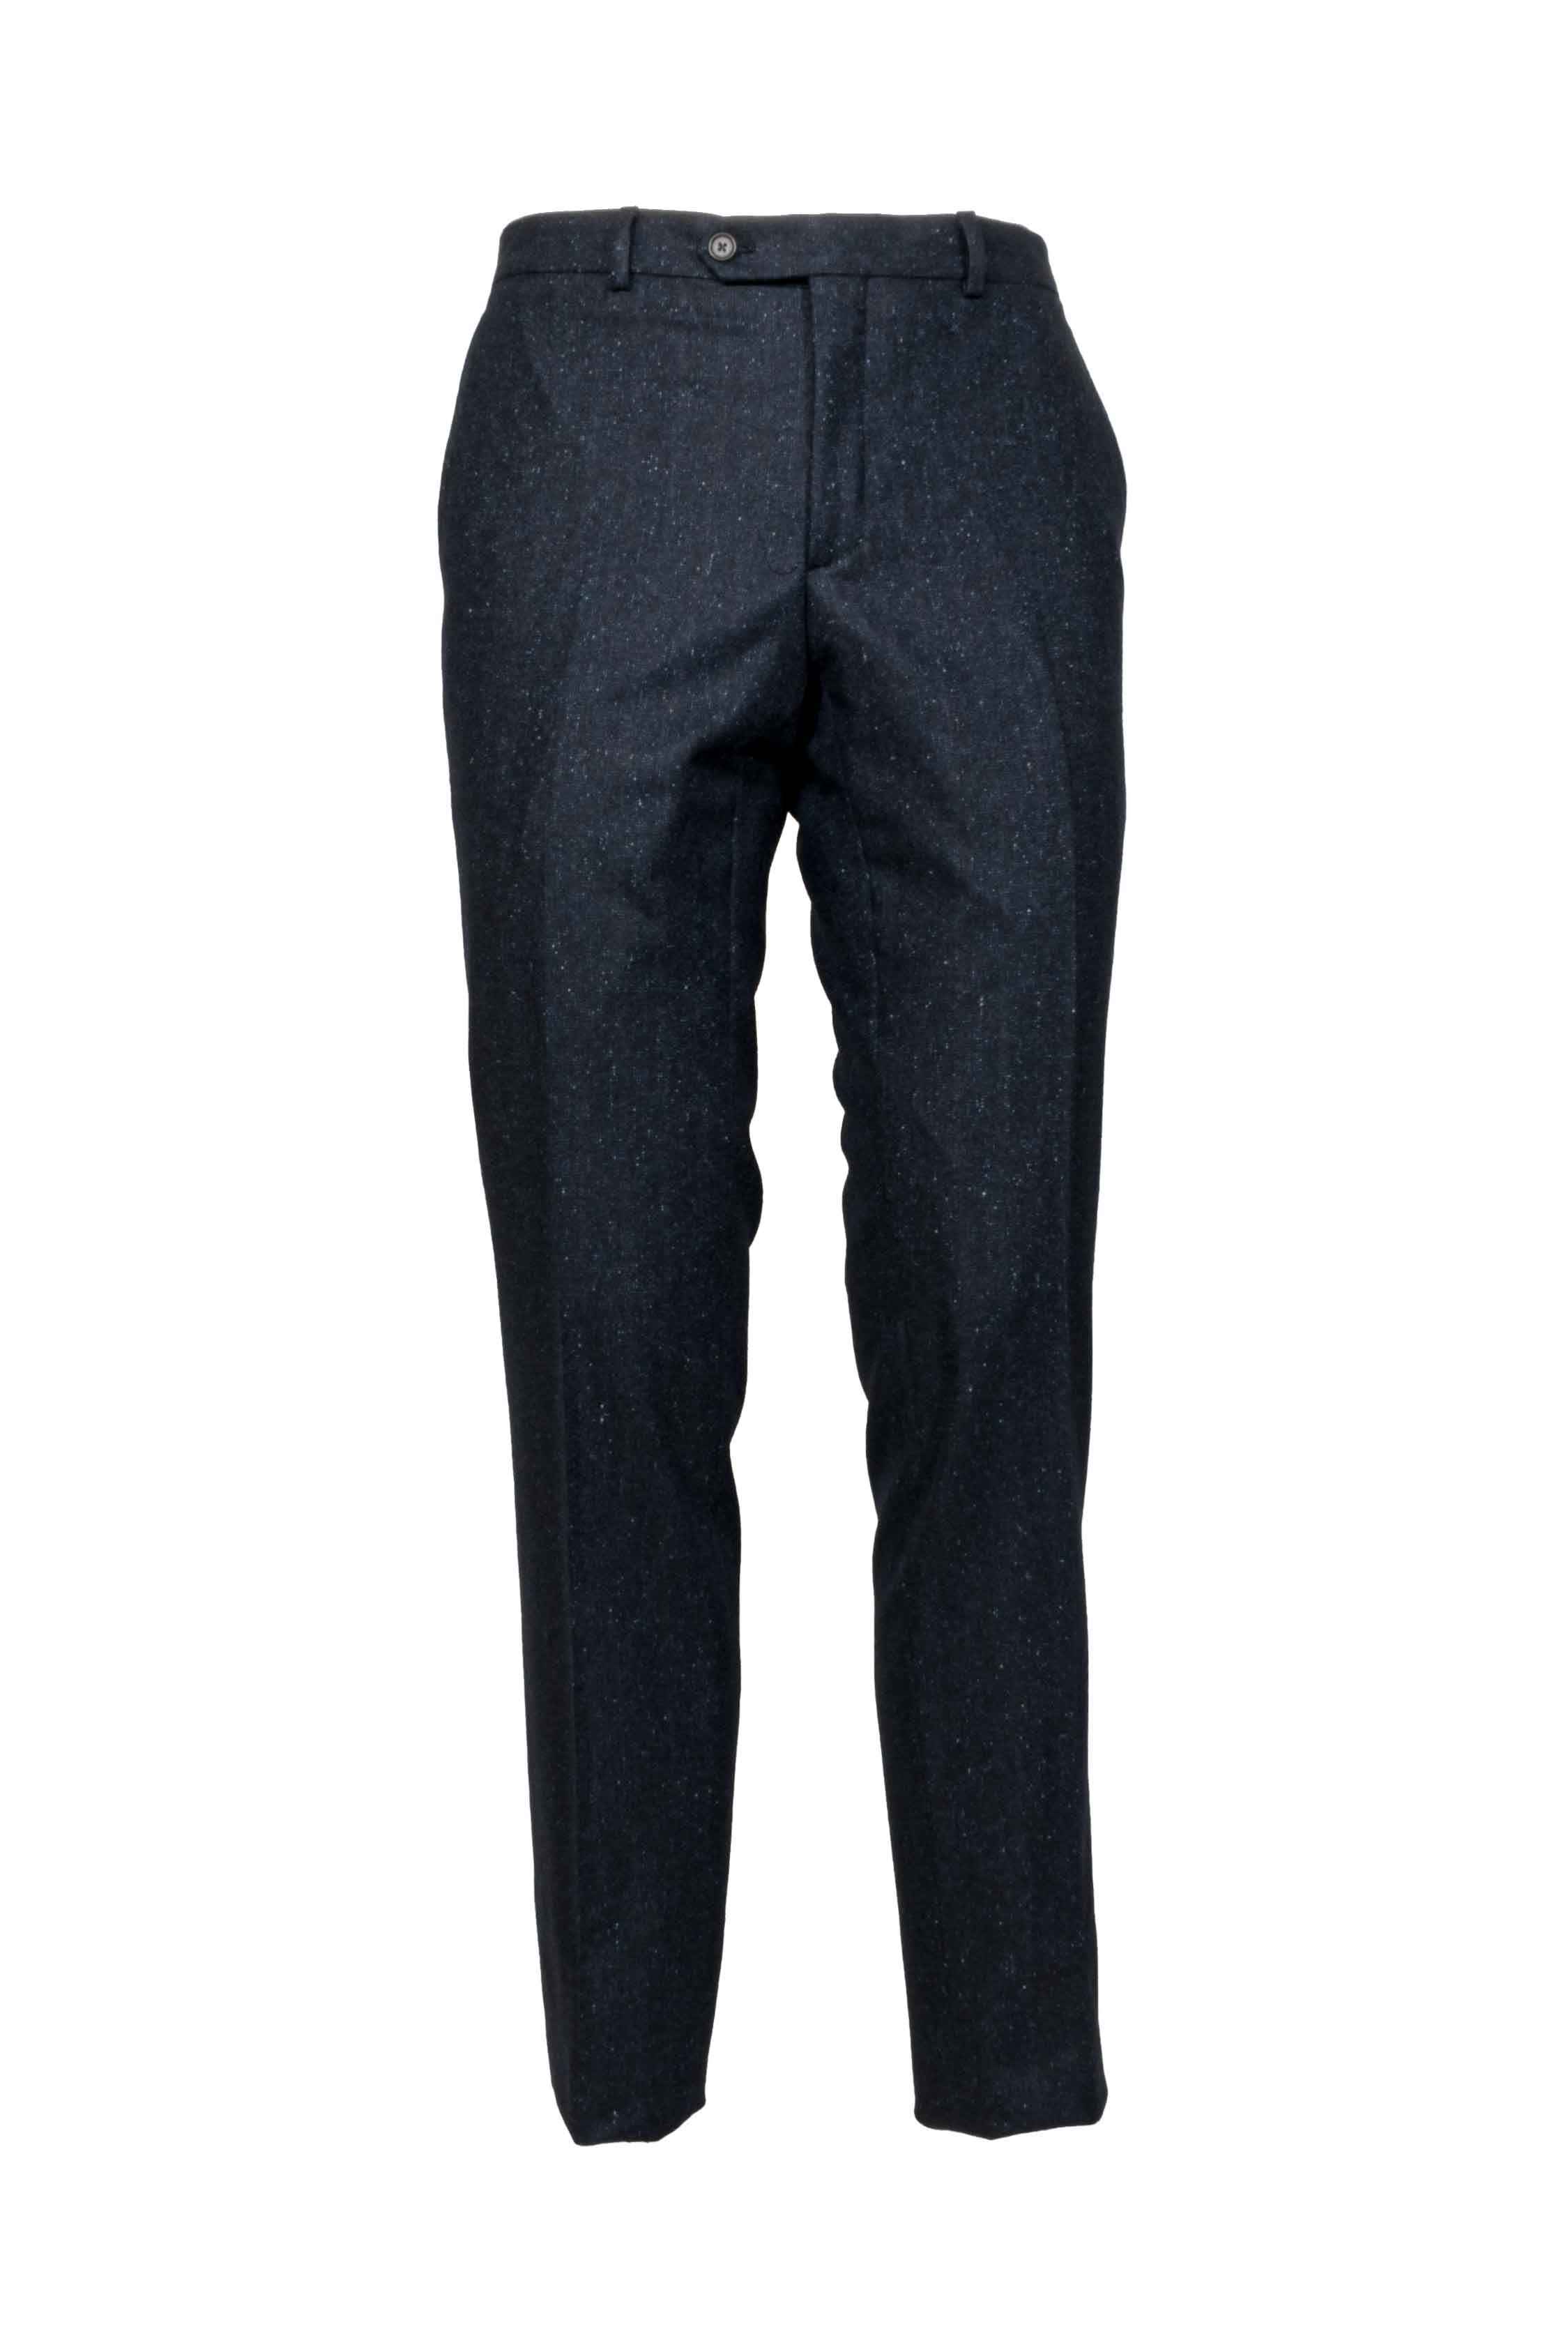 Pantalone uomo in lana puntinato blu front